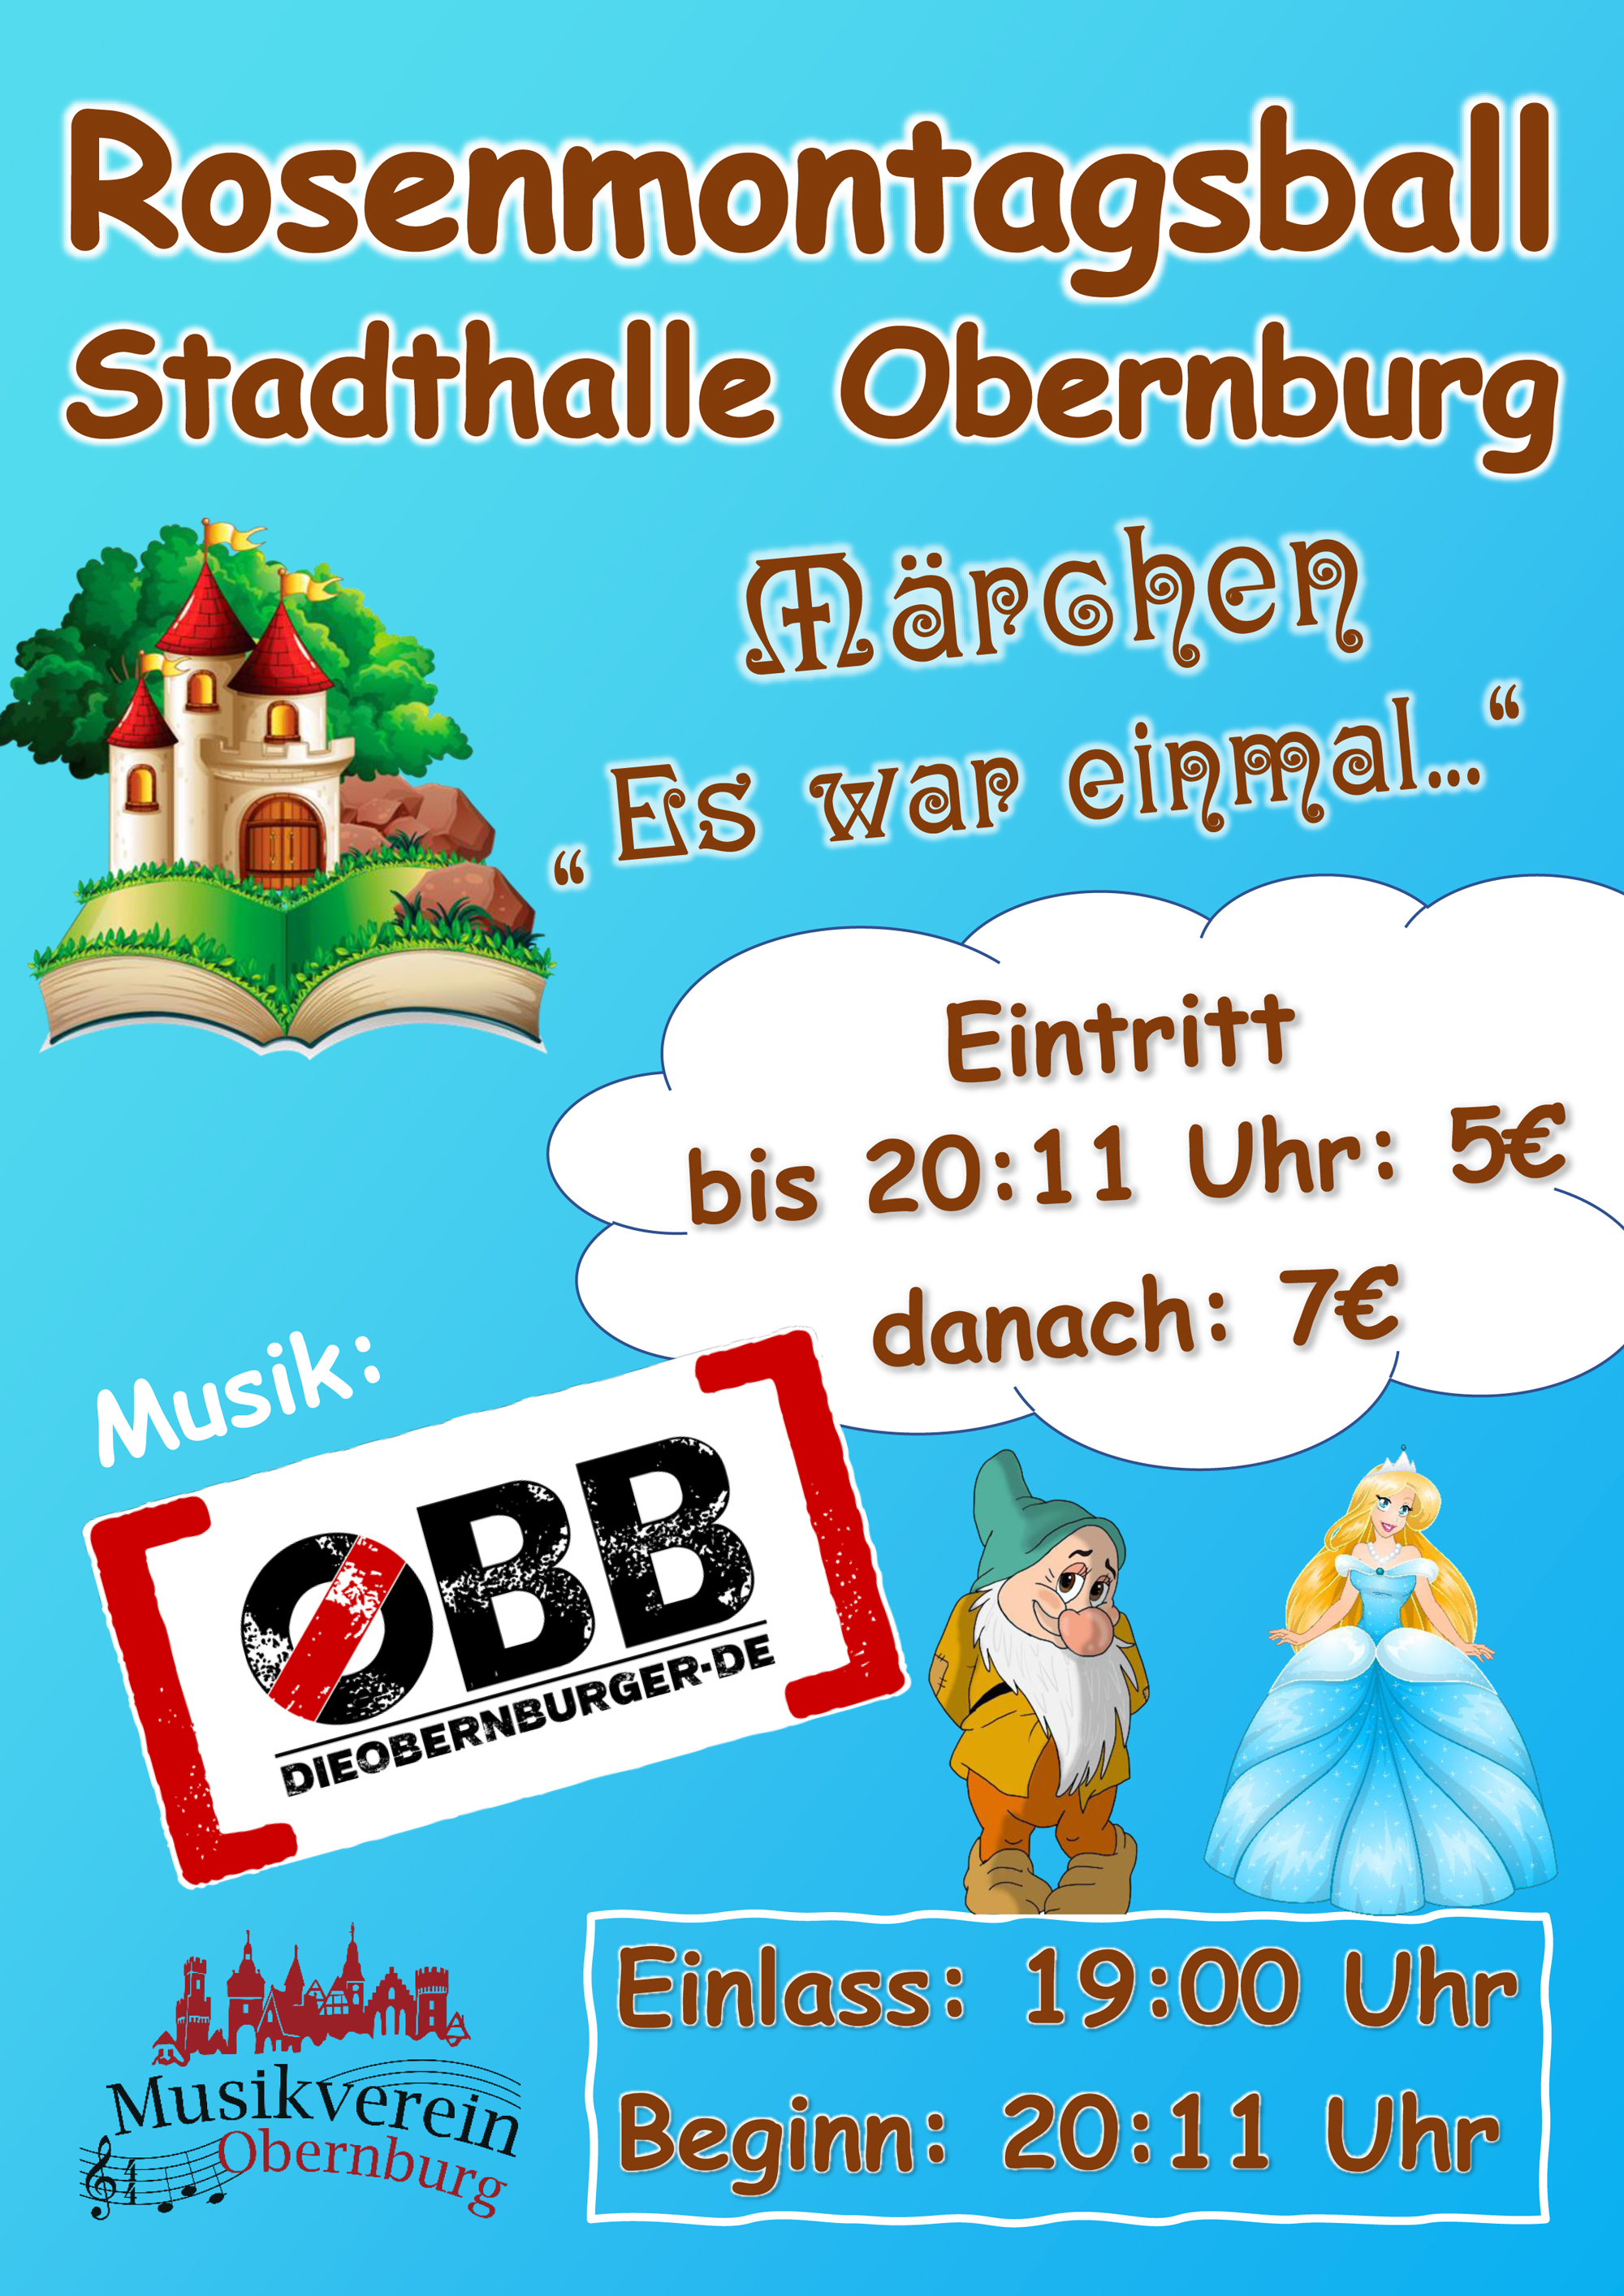 Gr. Rosenmontagsball in Obernburg mit "Die Obernburger"